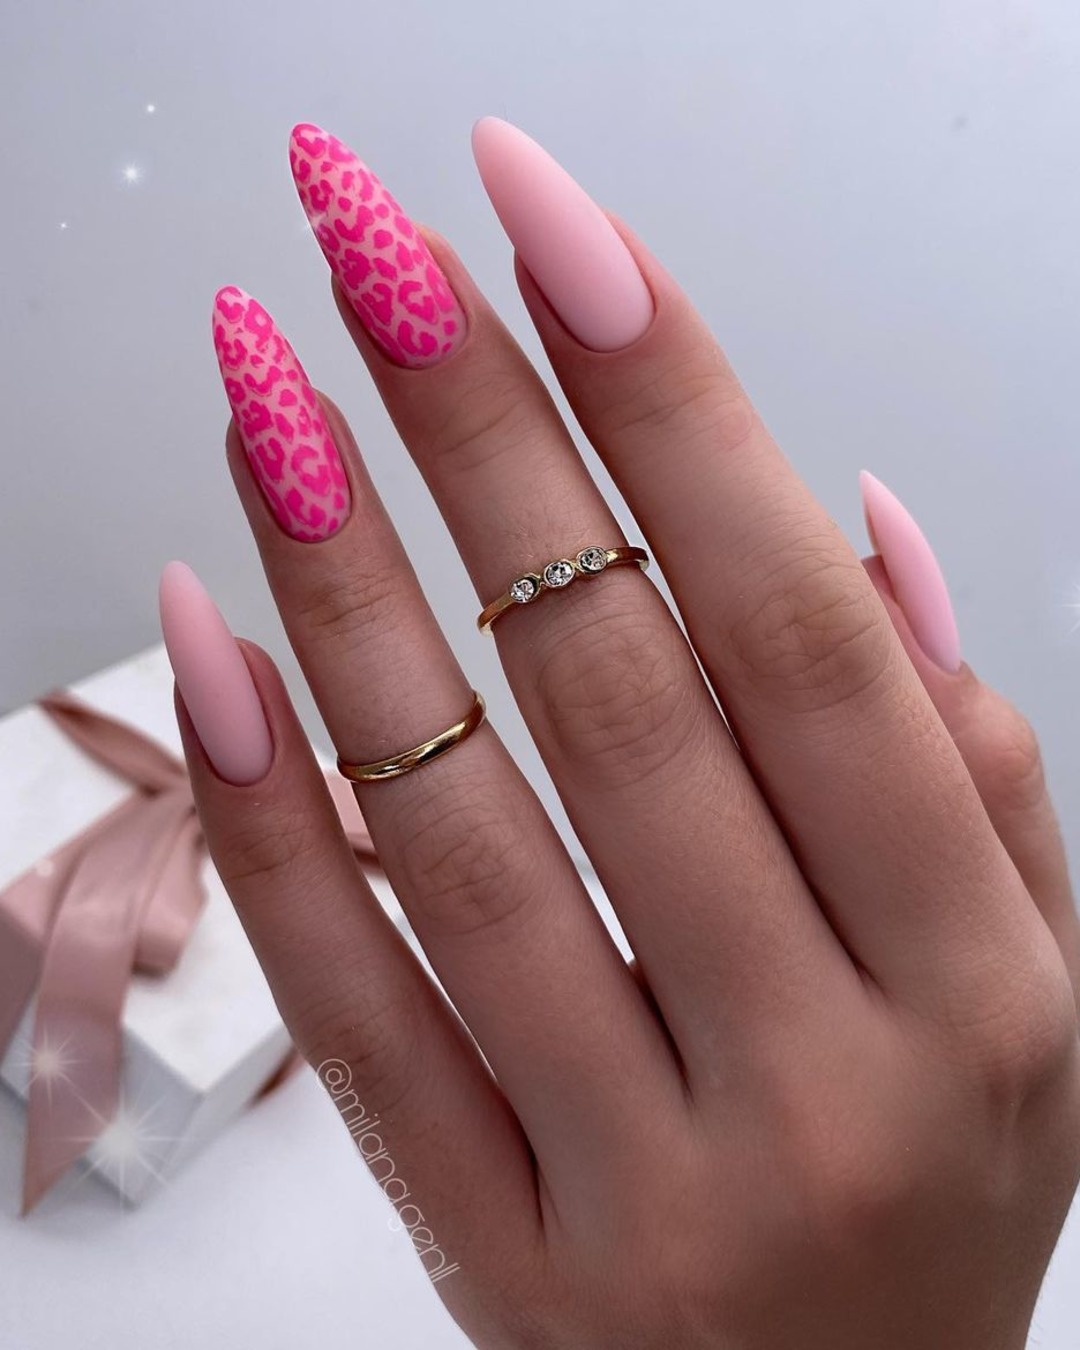 Bridesmaid nails pink design